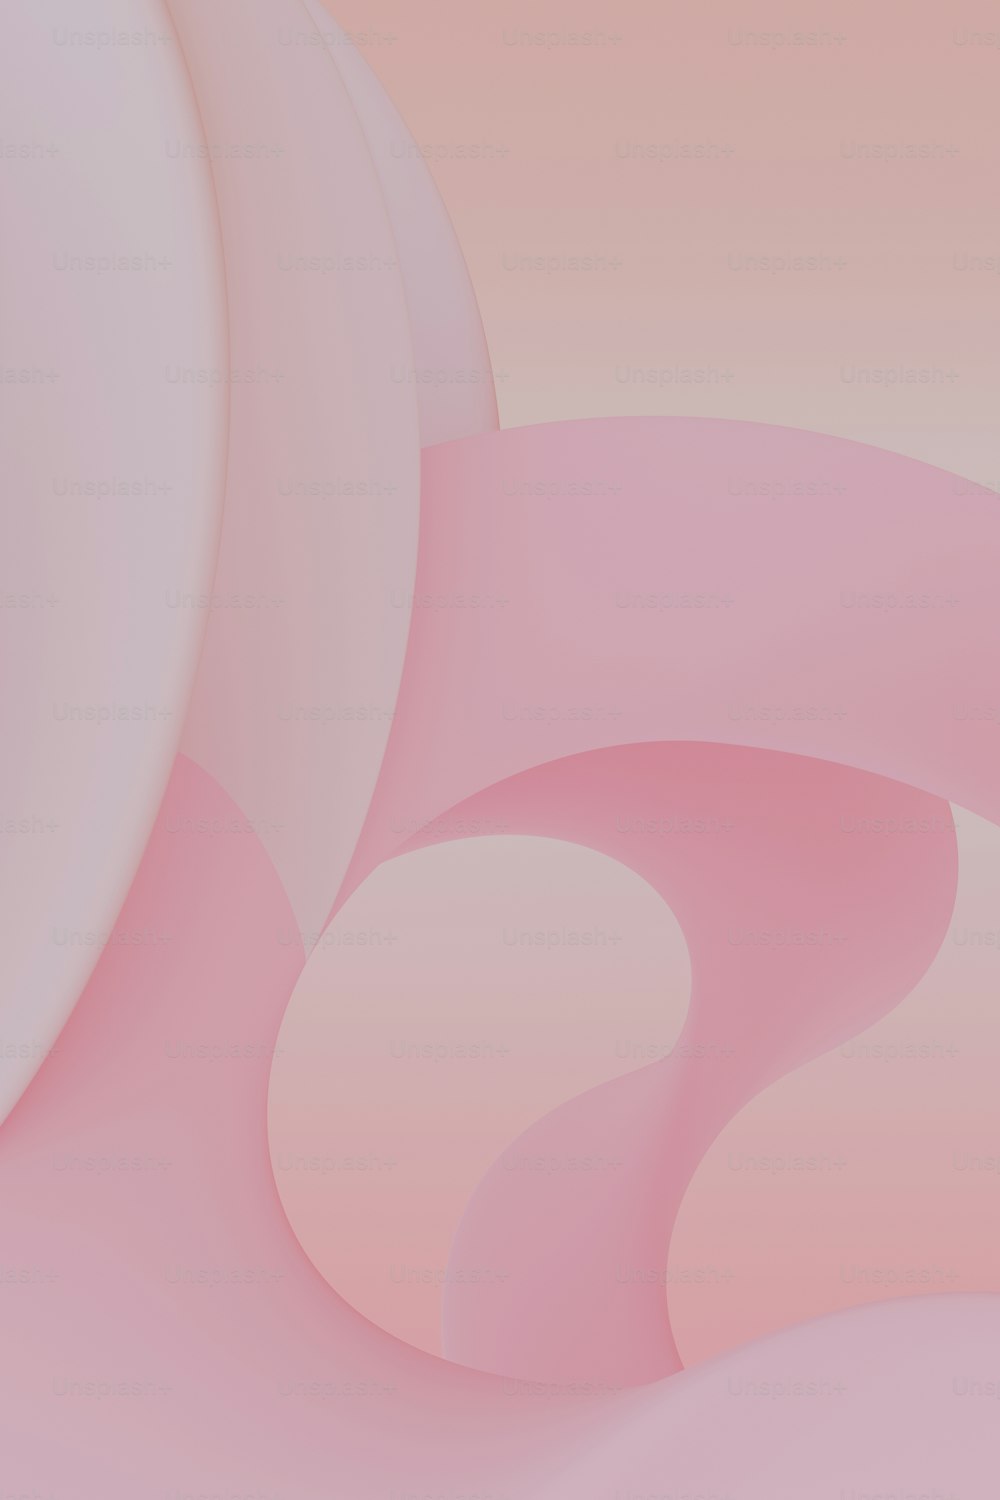 uno sfondo astratto rosa e bianco con forme curve